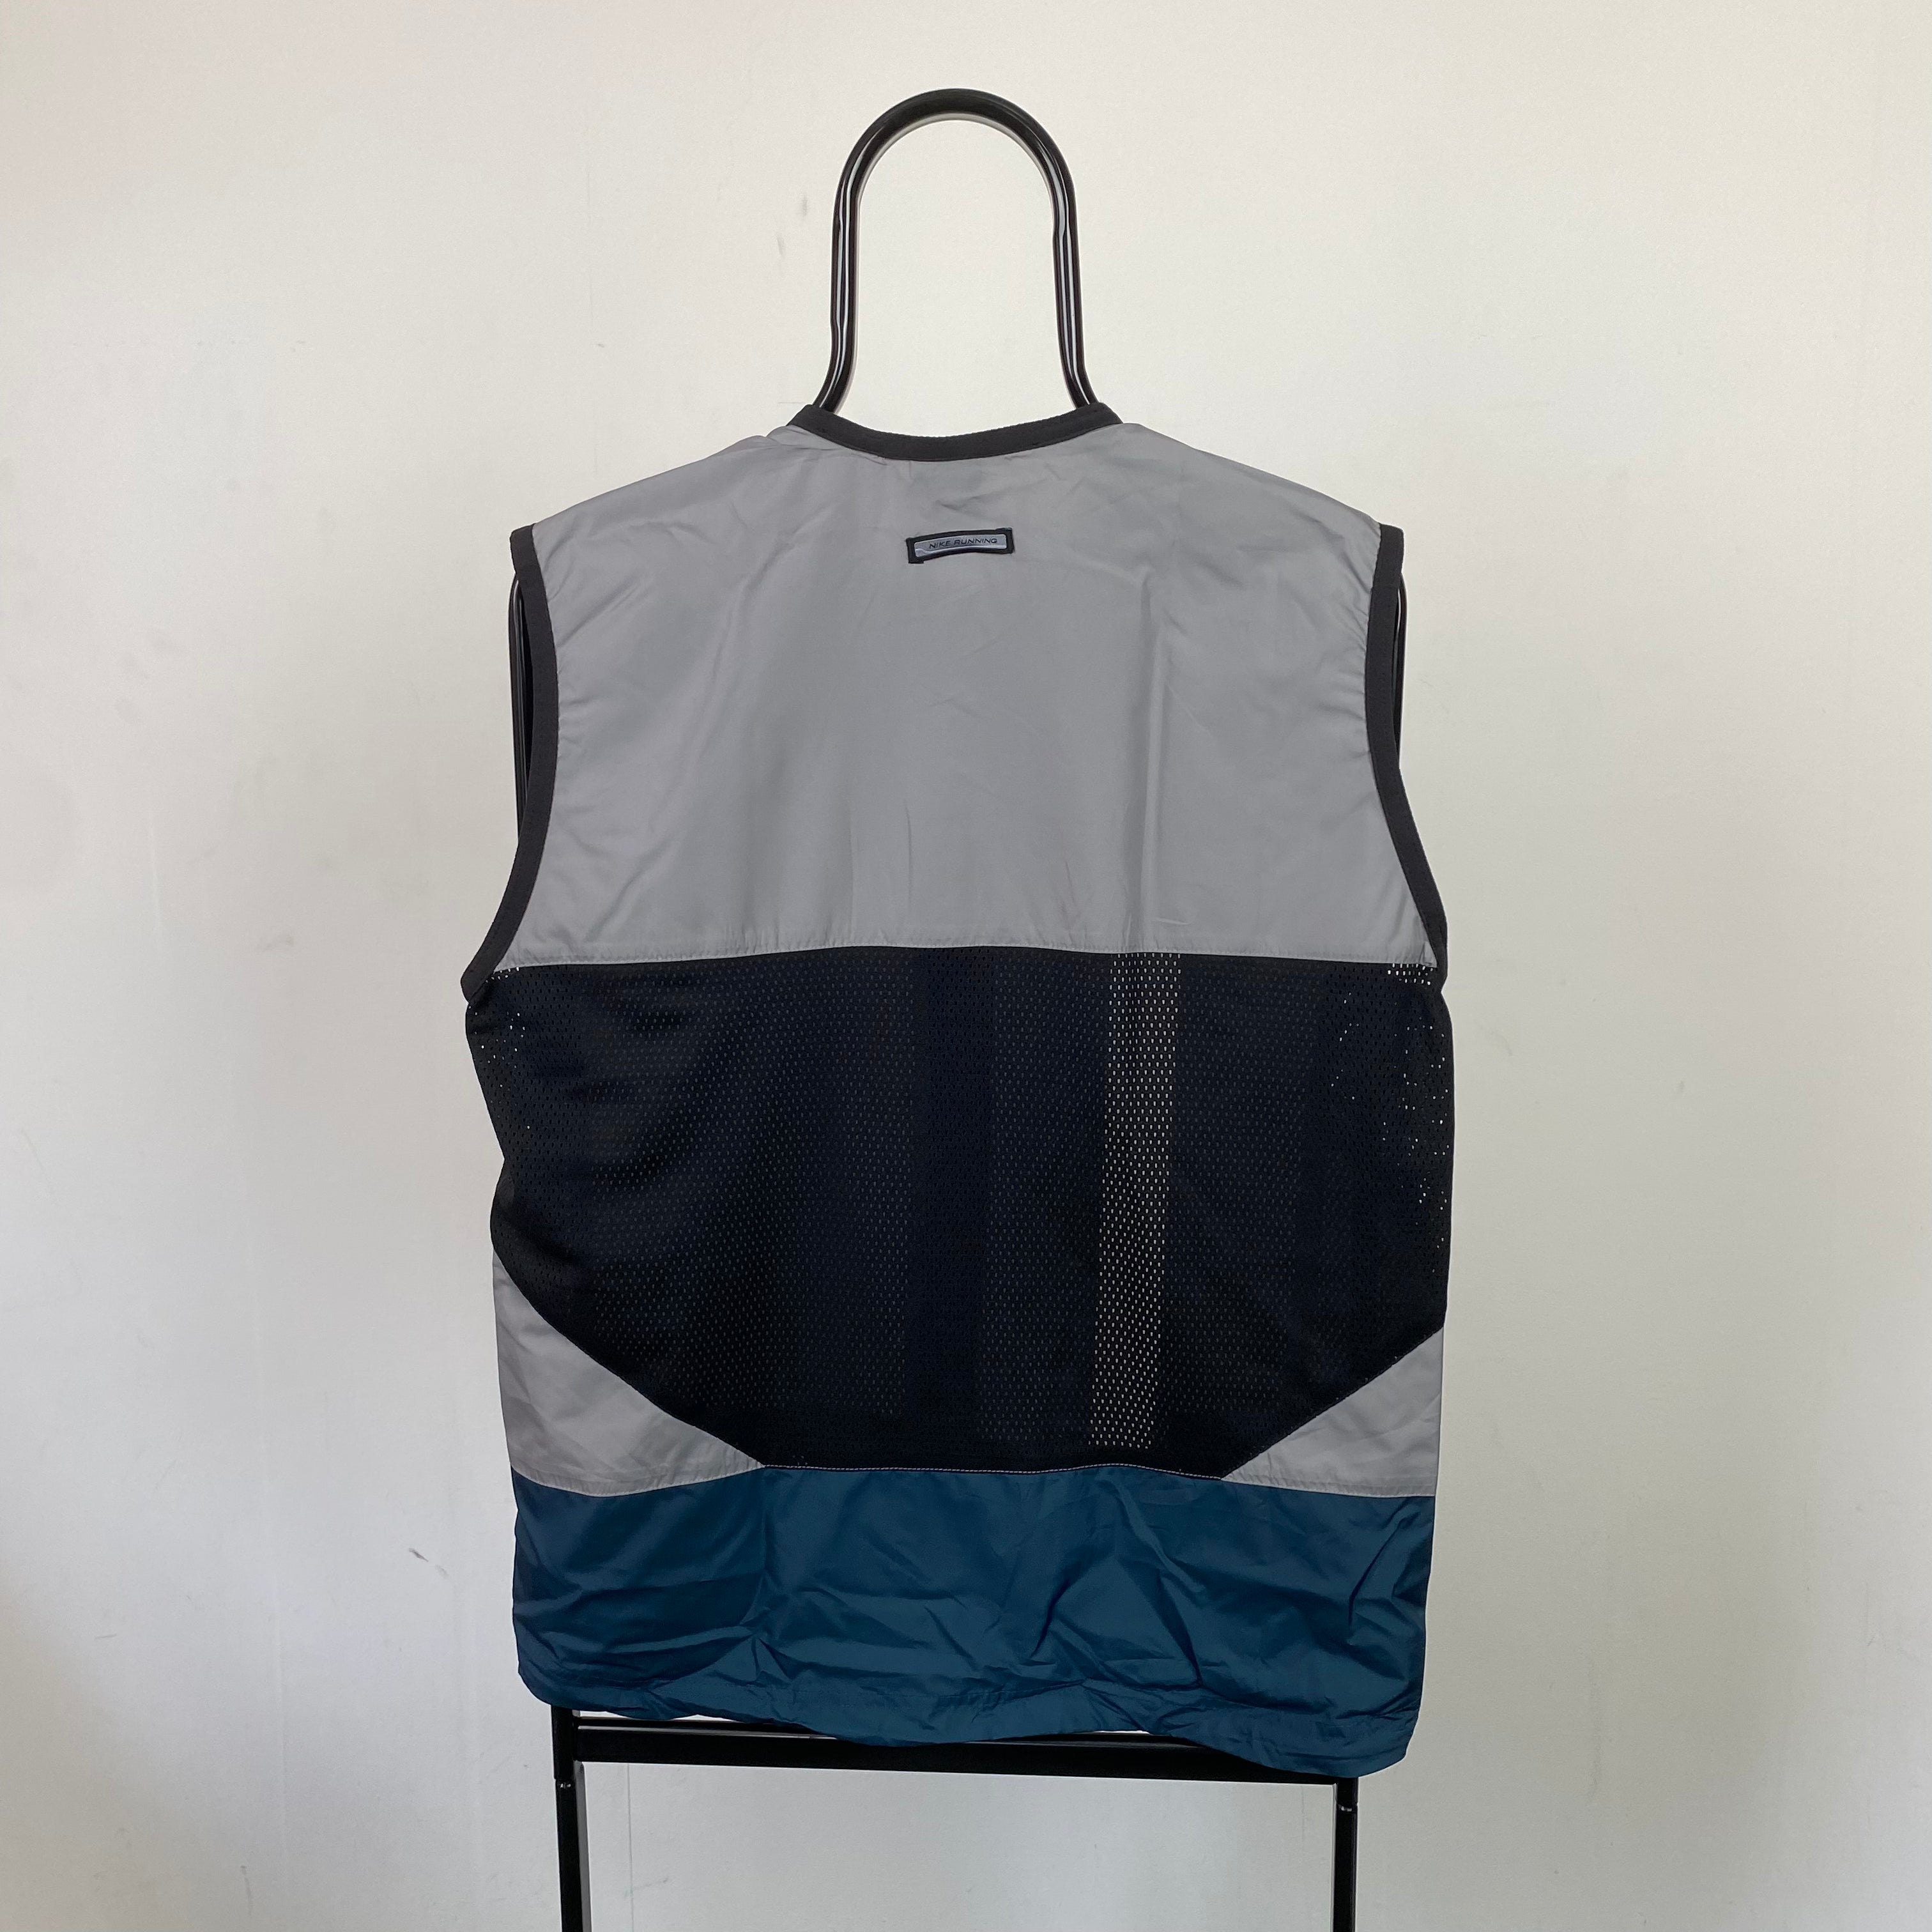 00s Nike Gilet Windbreaker Jacket Grey XL